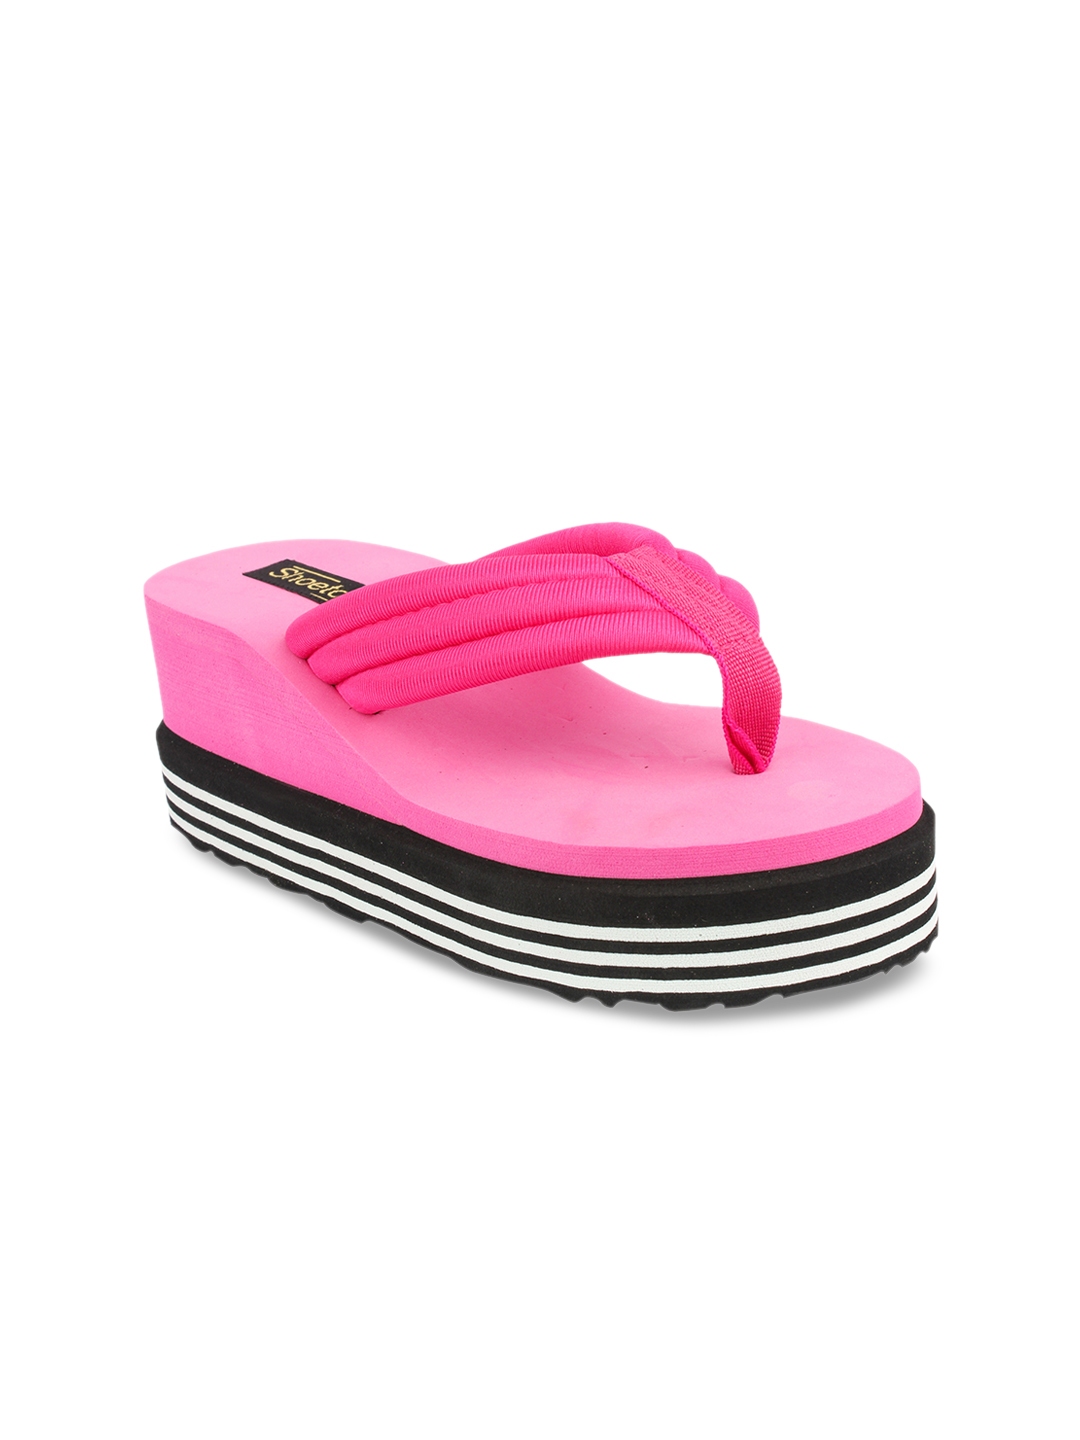 Buy Shoetopia Women Pink Solid Sandals - Heels for Women 8255243 | Myntra